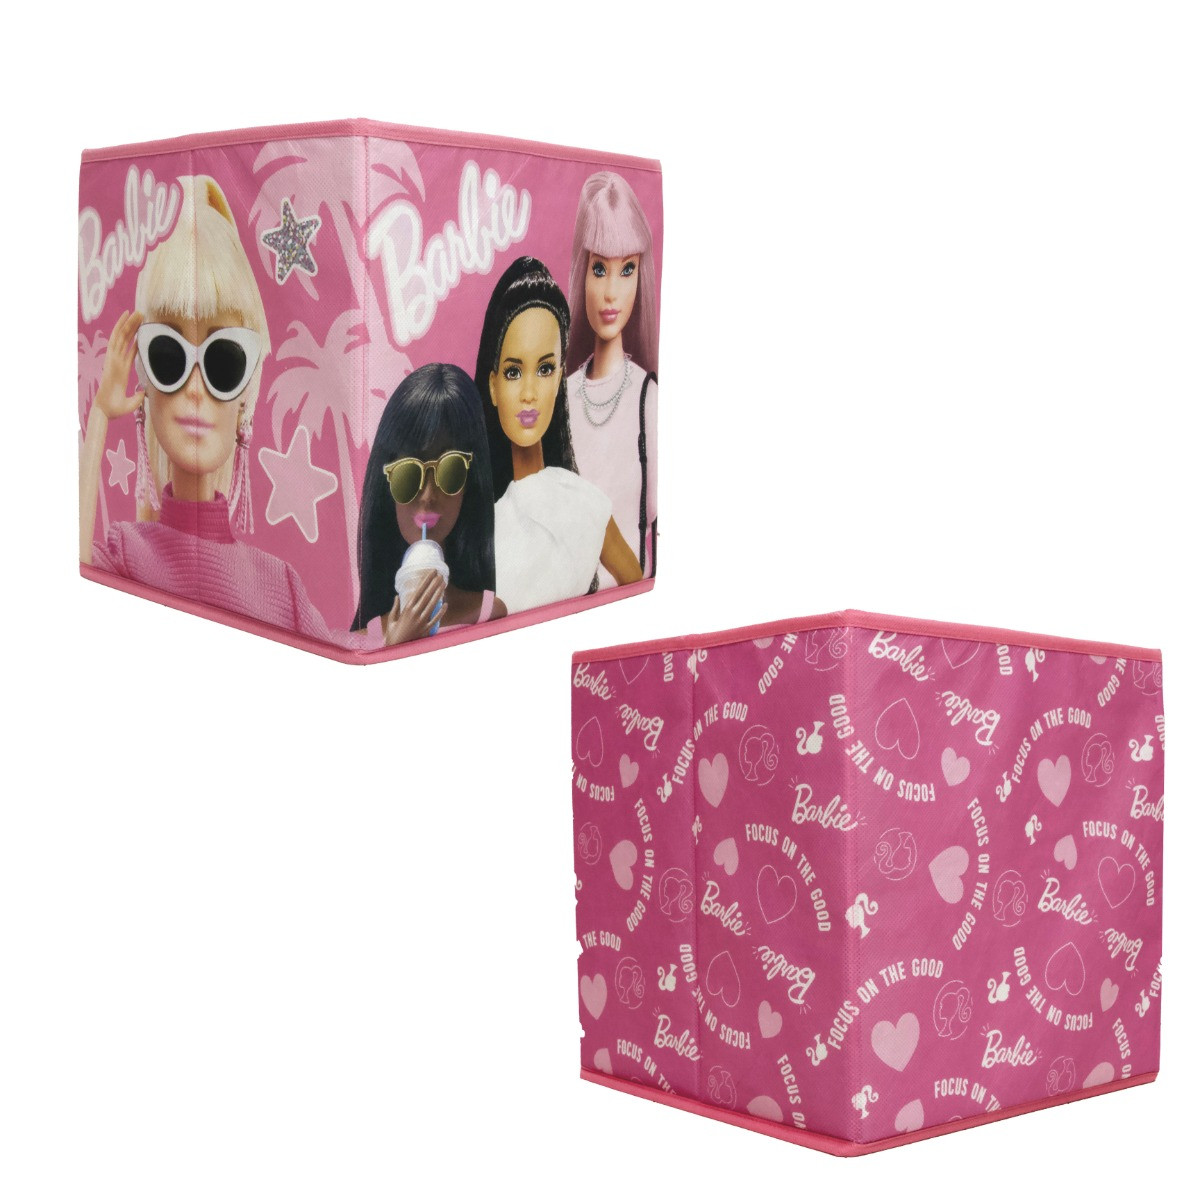 Barbie Storage Box, Pink - 2 Pack>